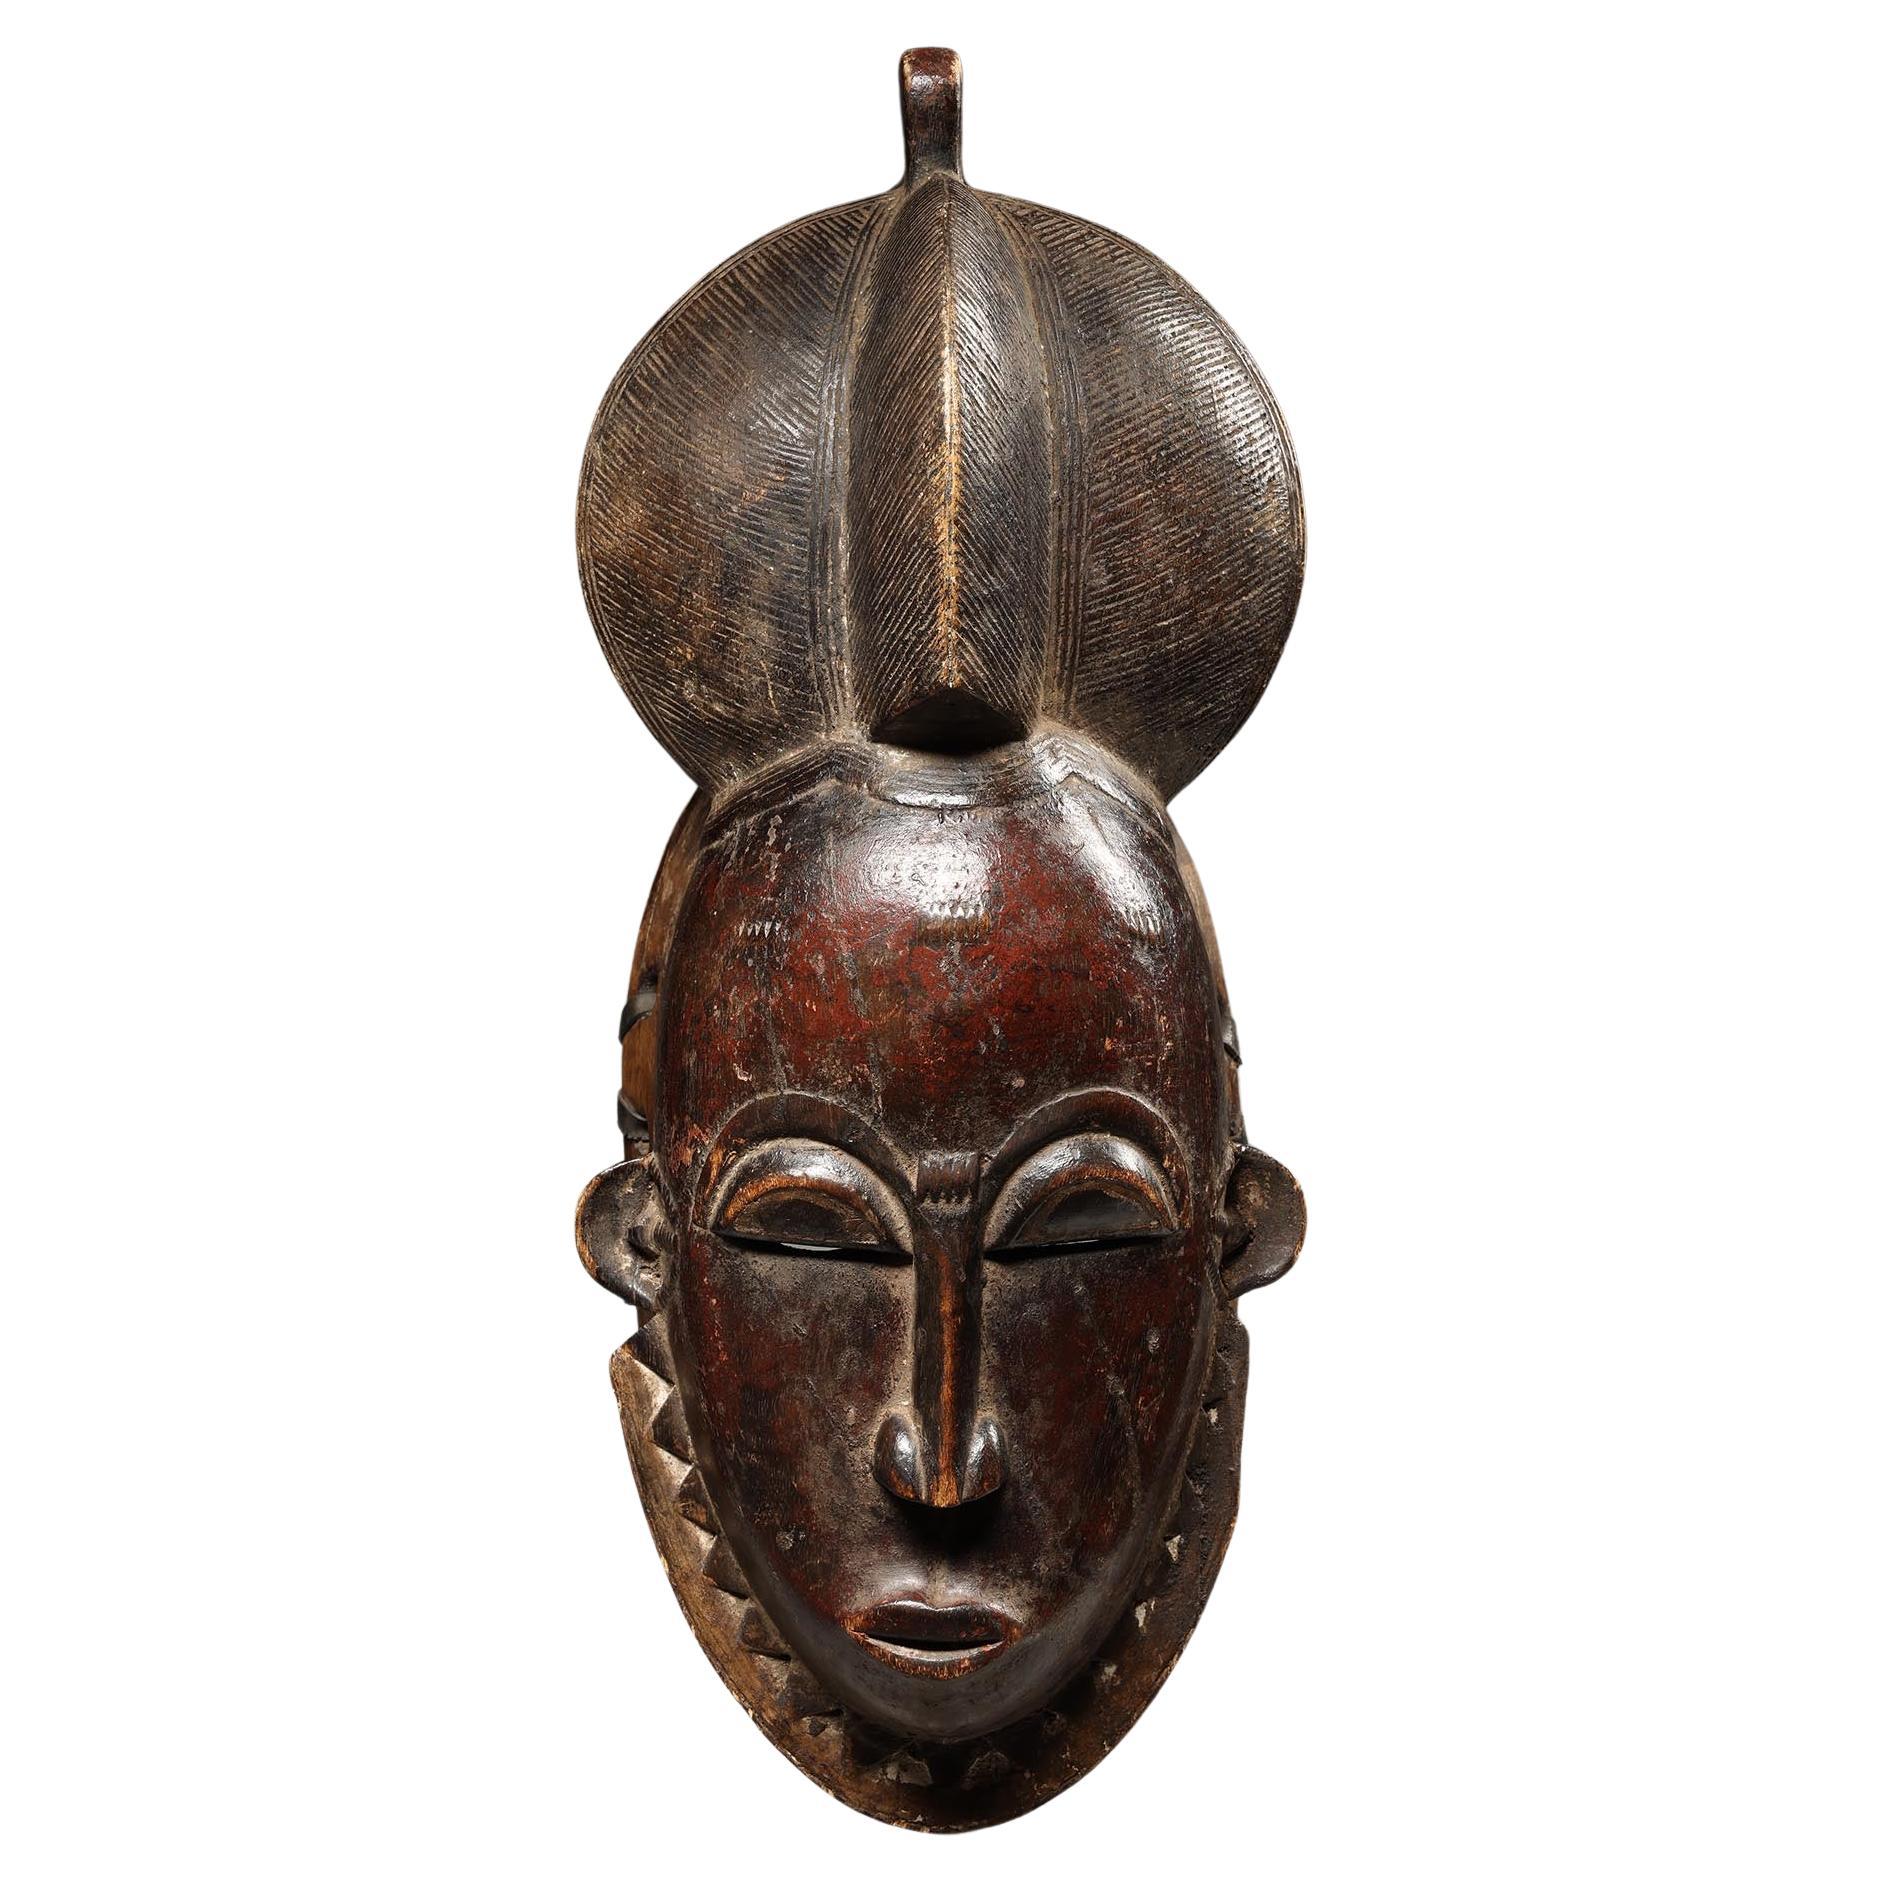 Masque Baoulé classique dansé rouge foncé et noir, Côte d'Ivoire, Afrique, milieu du 20e siècle